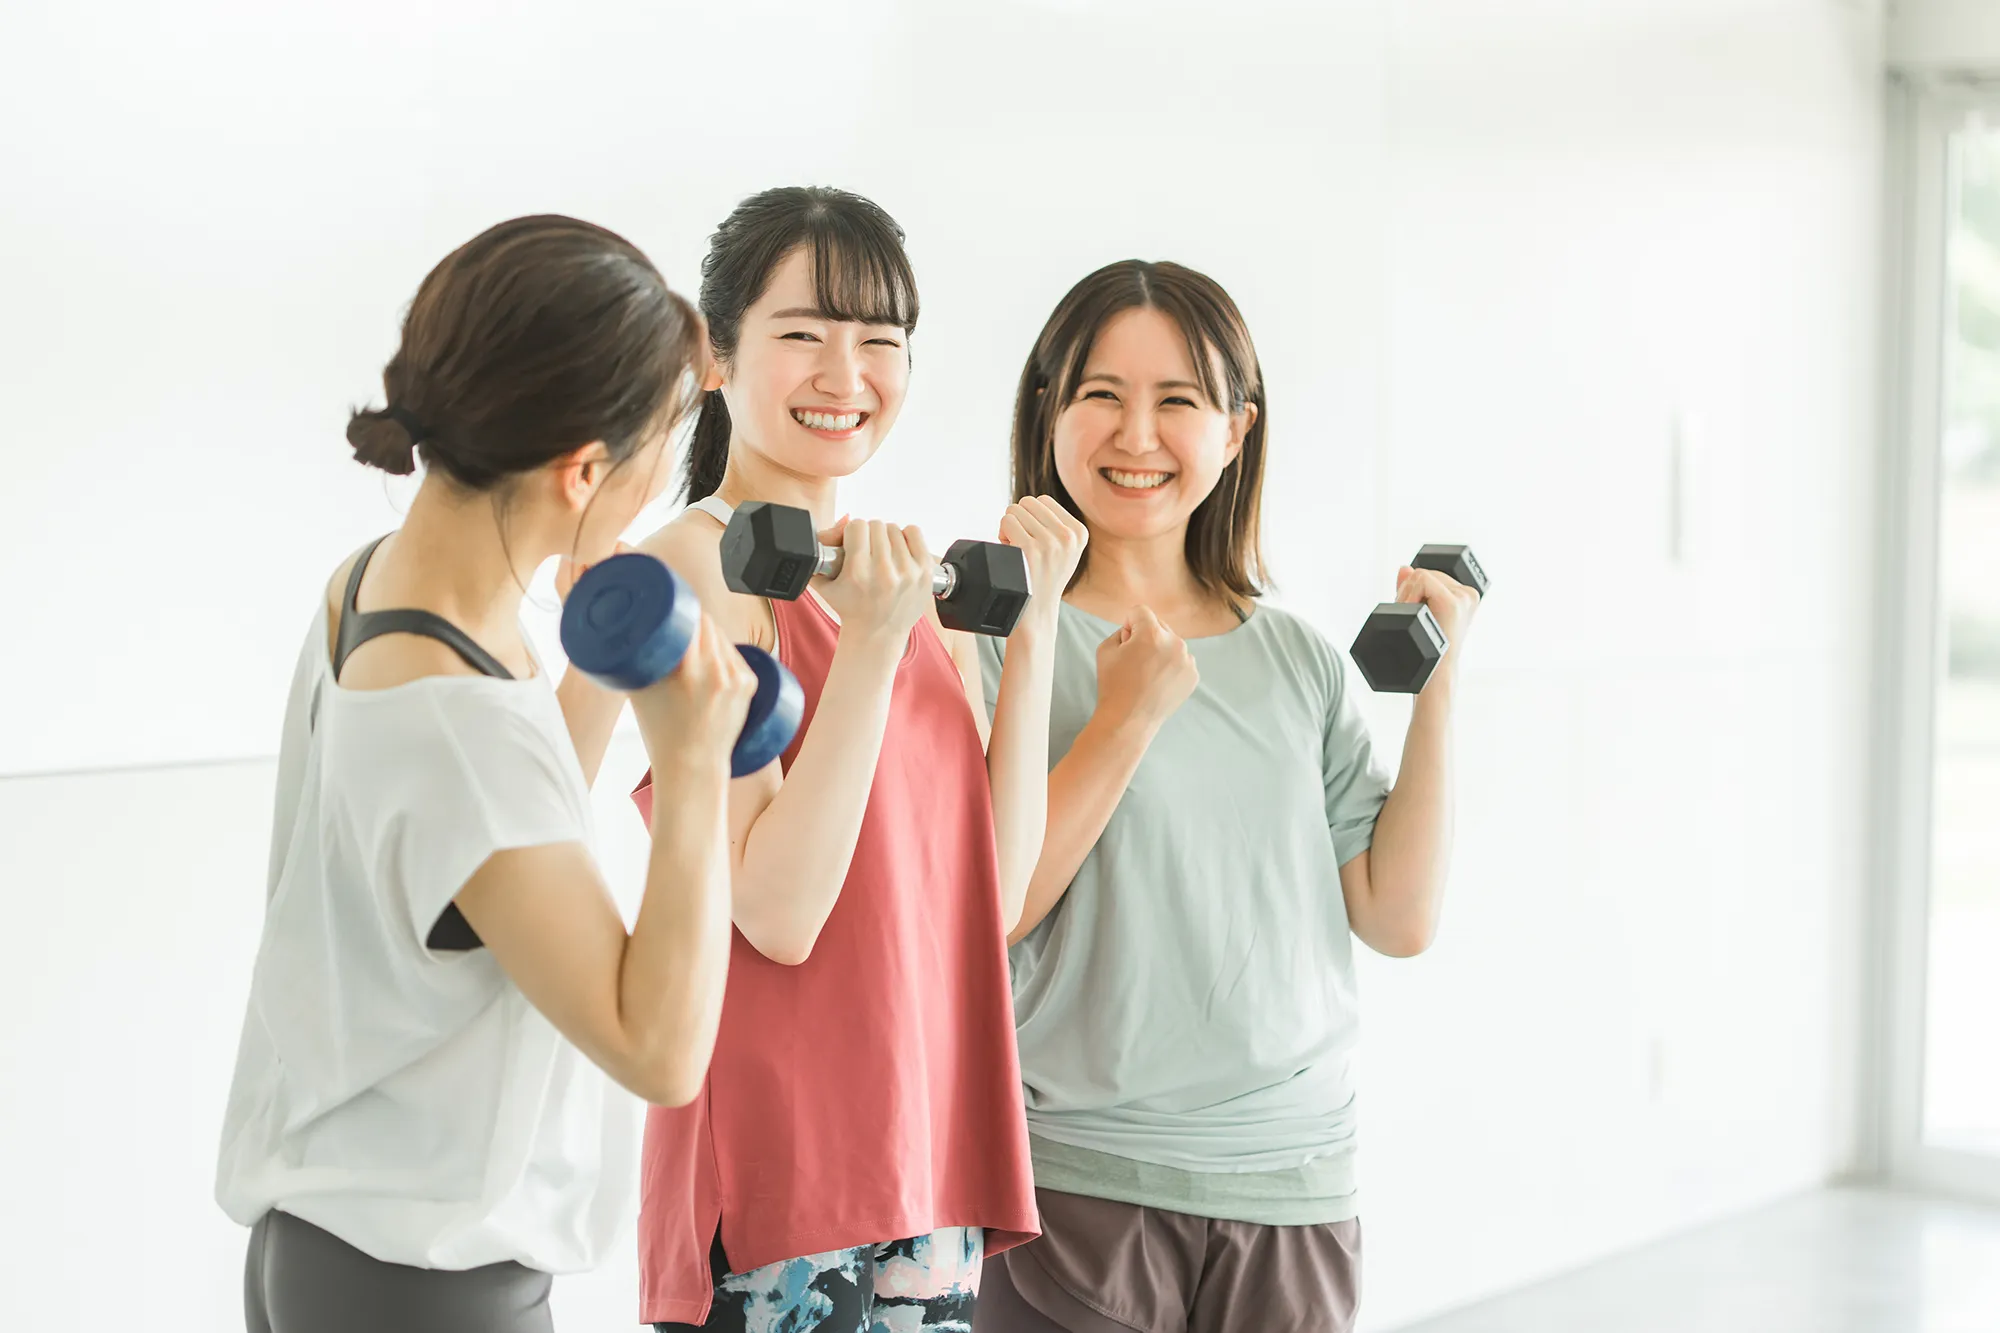 3人の女性が笑顔でトレーニングをしている画像